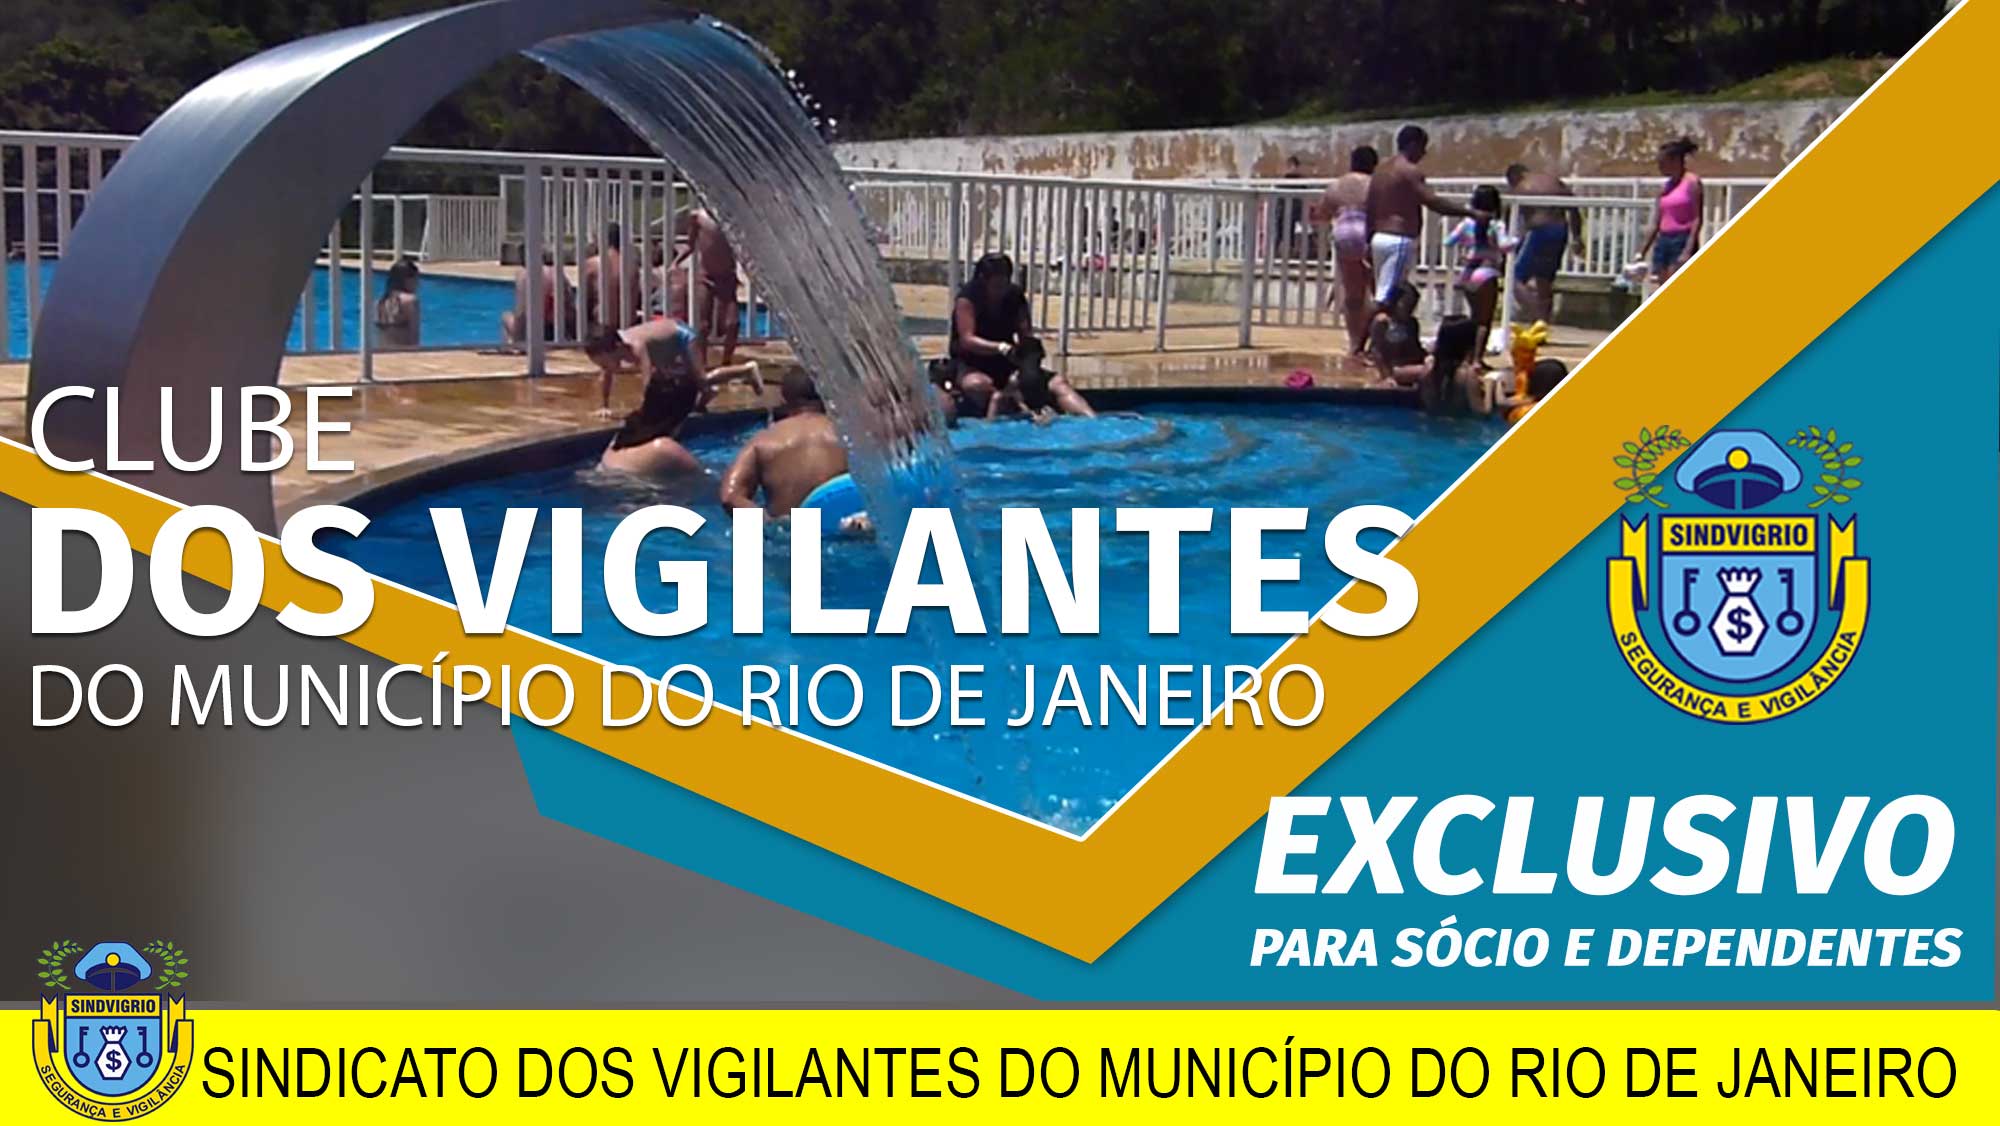 Sindicato dos vigilantes de Minas Gerais - Reabertura do Clube dos